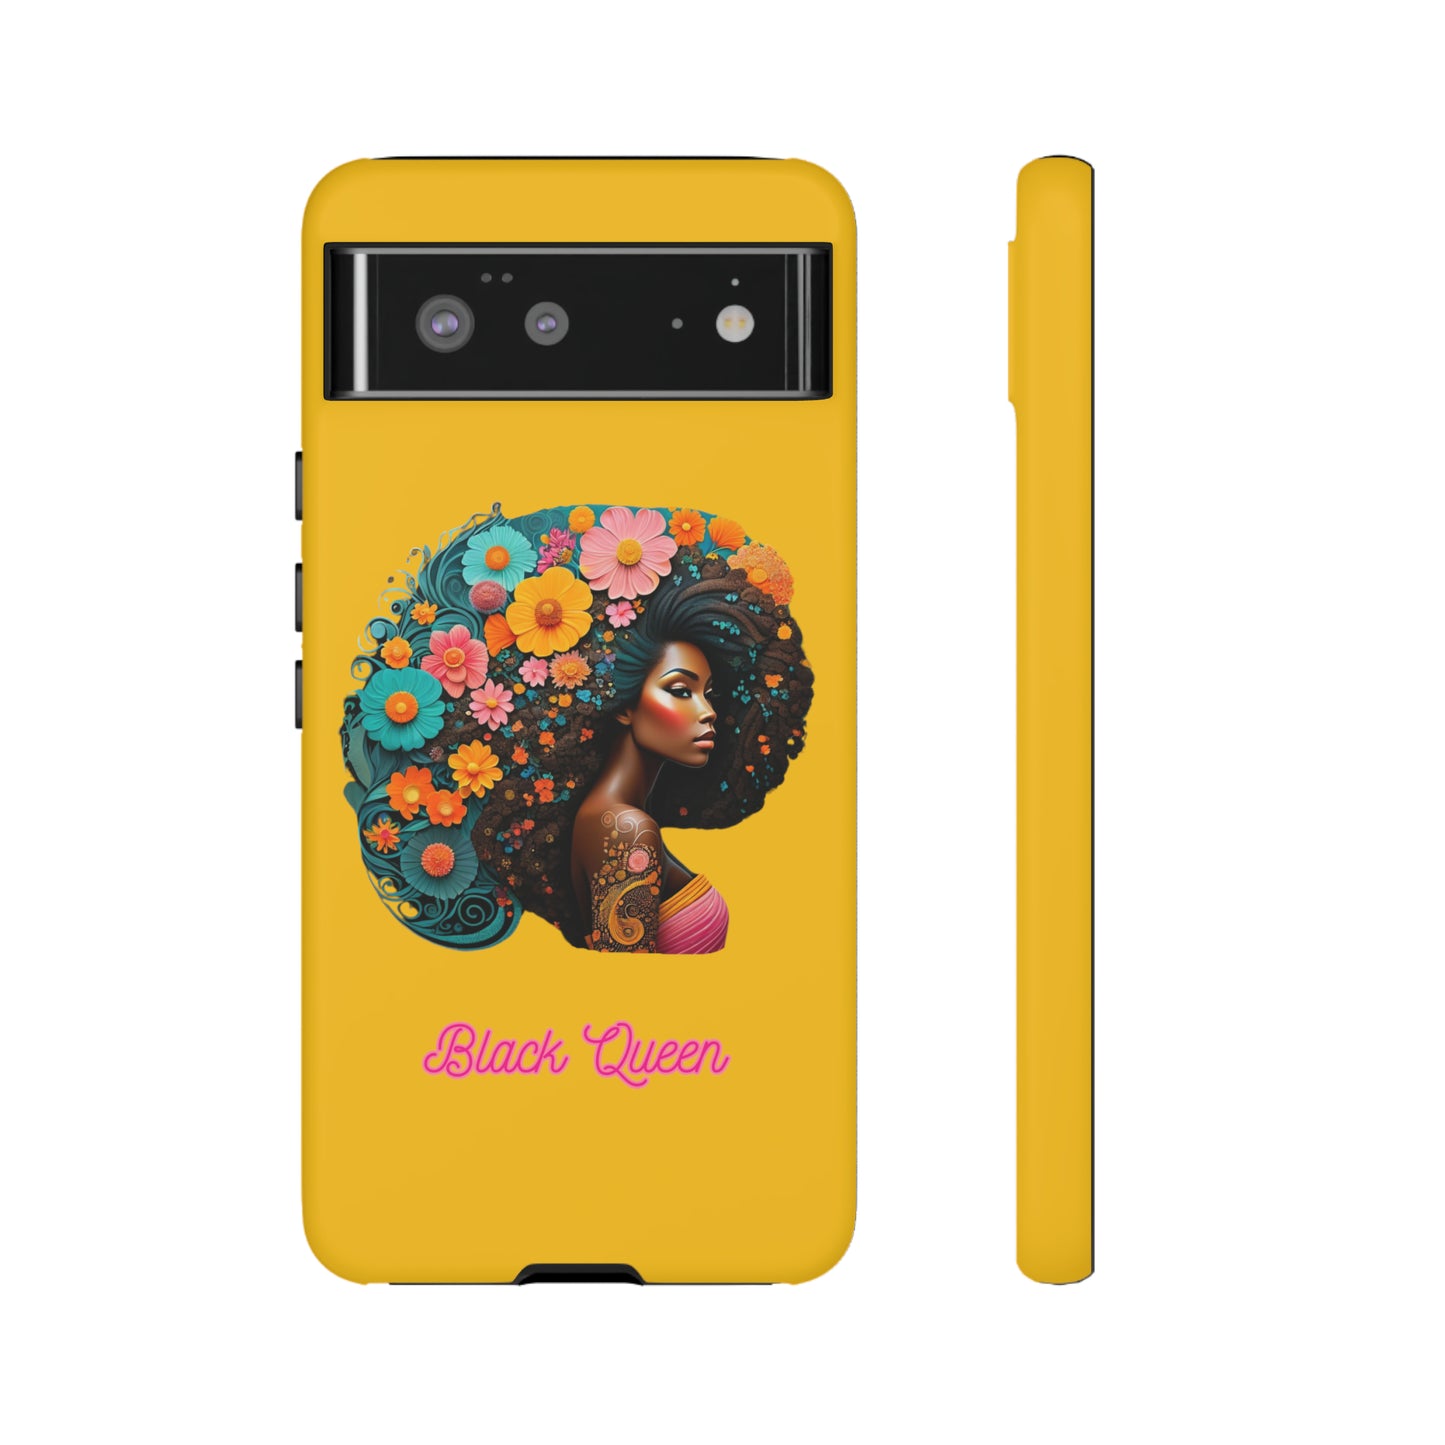 "Black Queen" Tough Case -Yellow